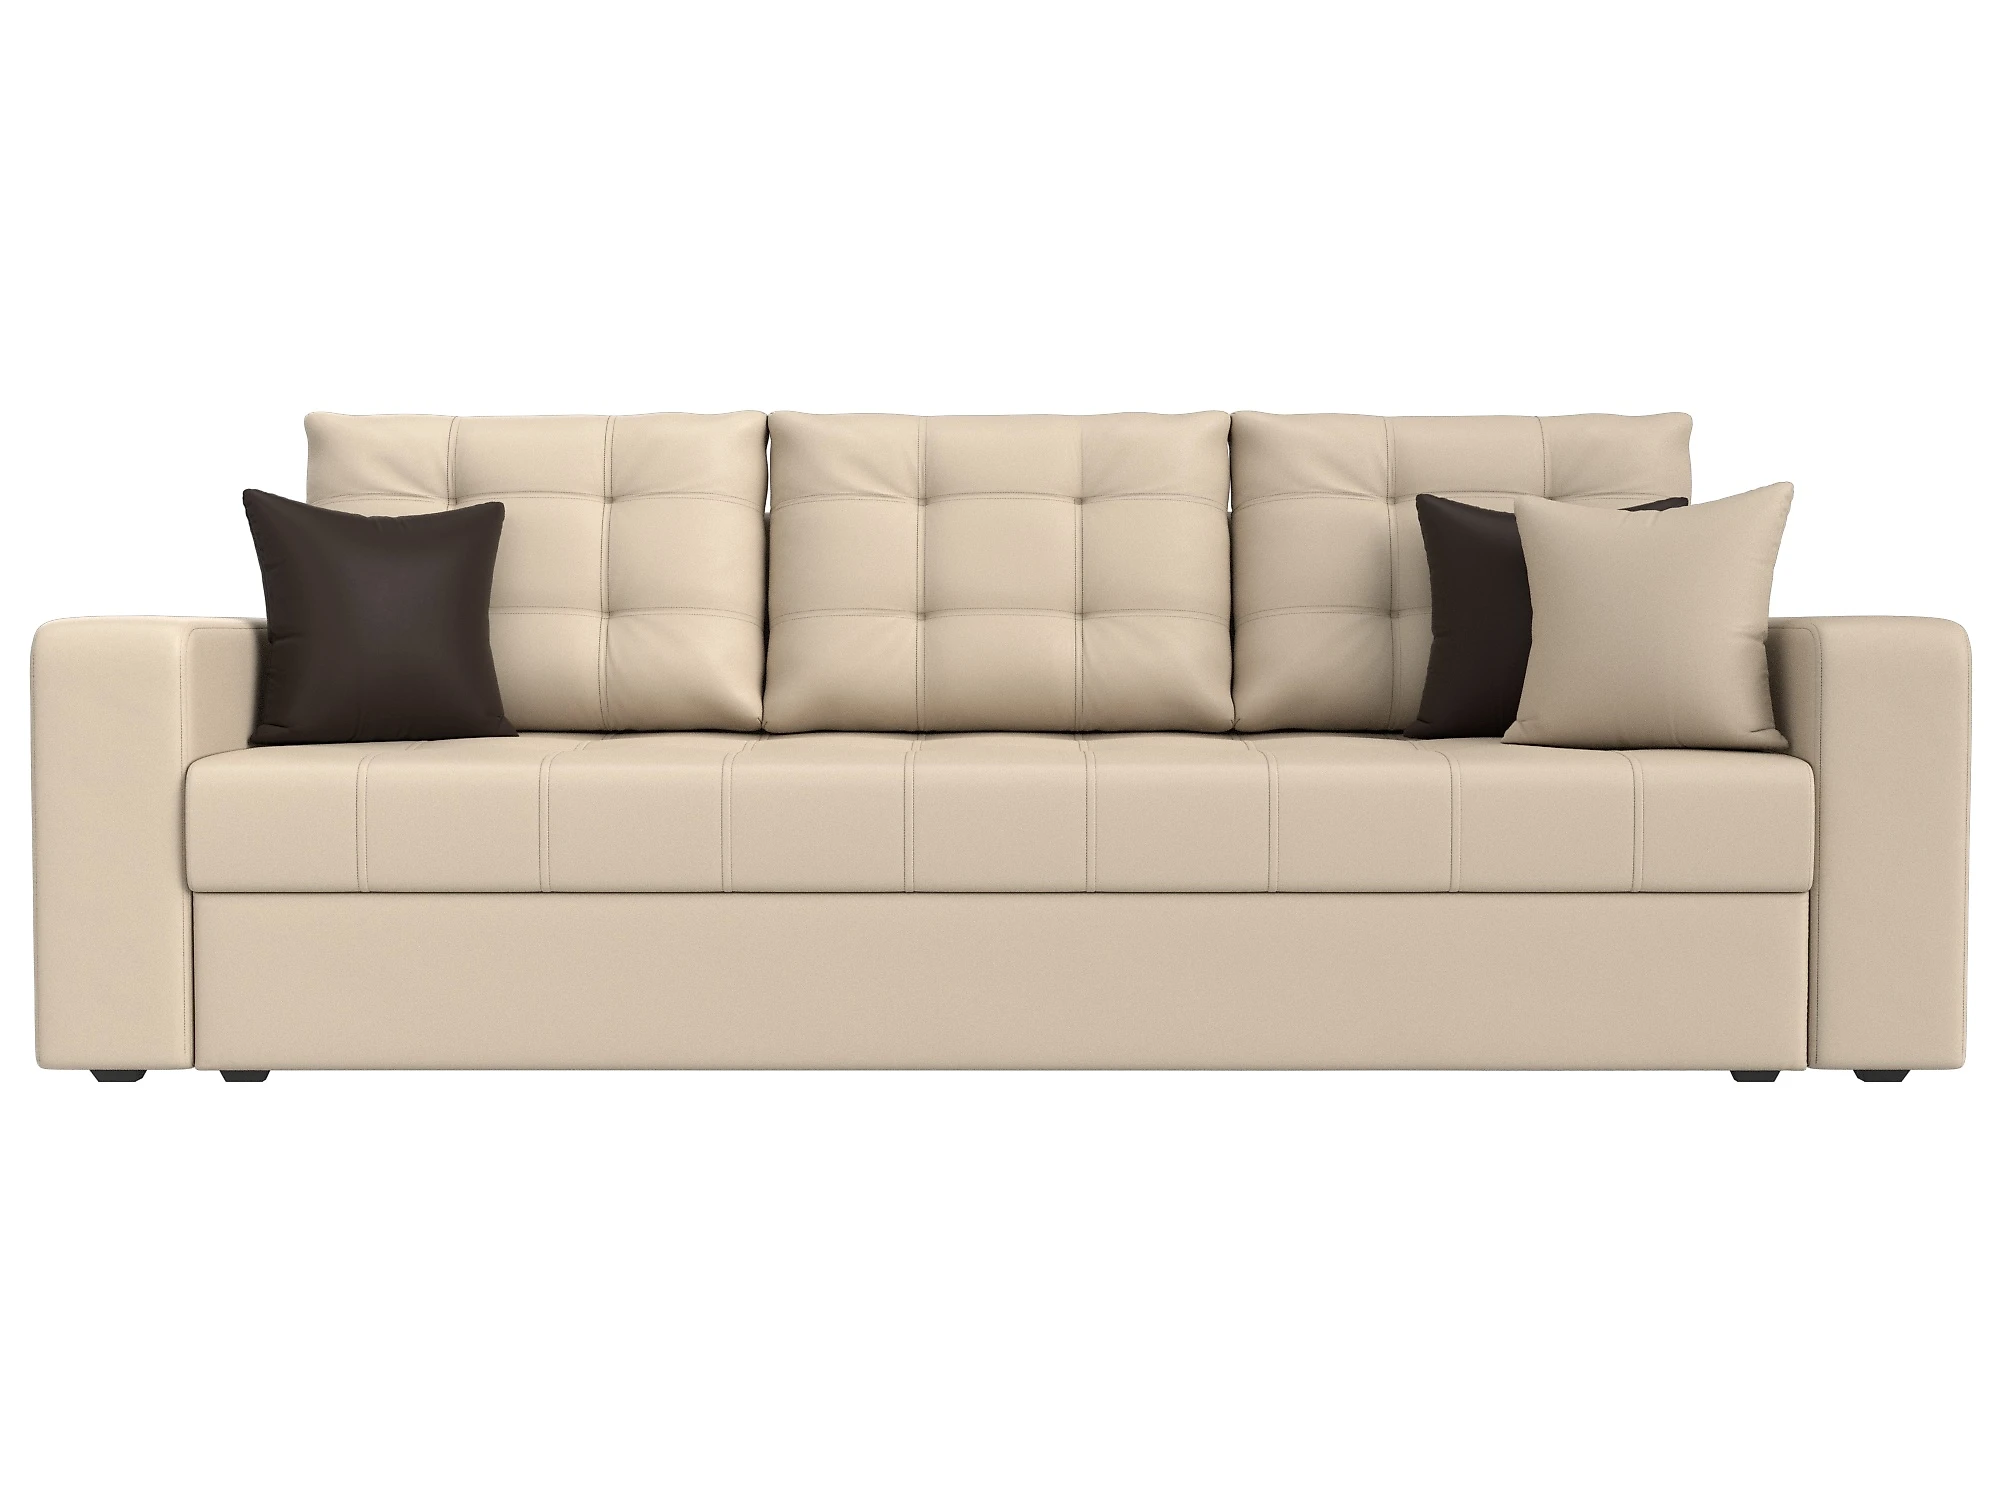  кожаный диван еврокнижка Ливерпуль Дизайн 6